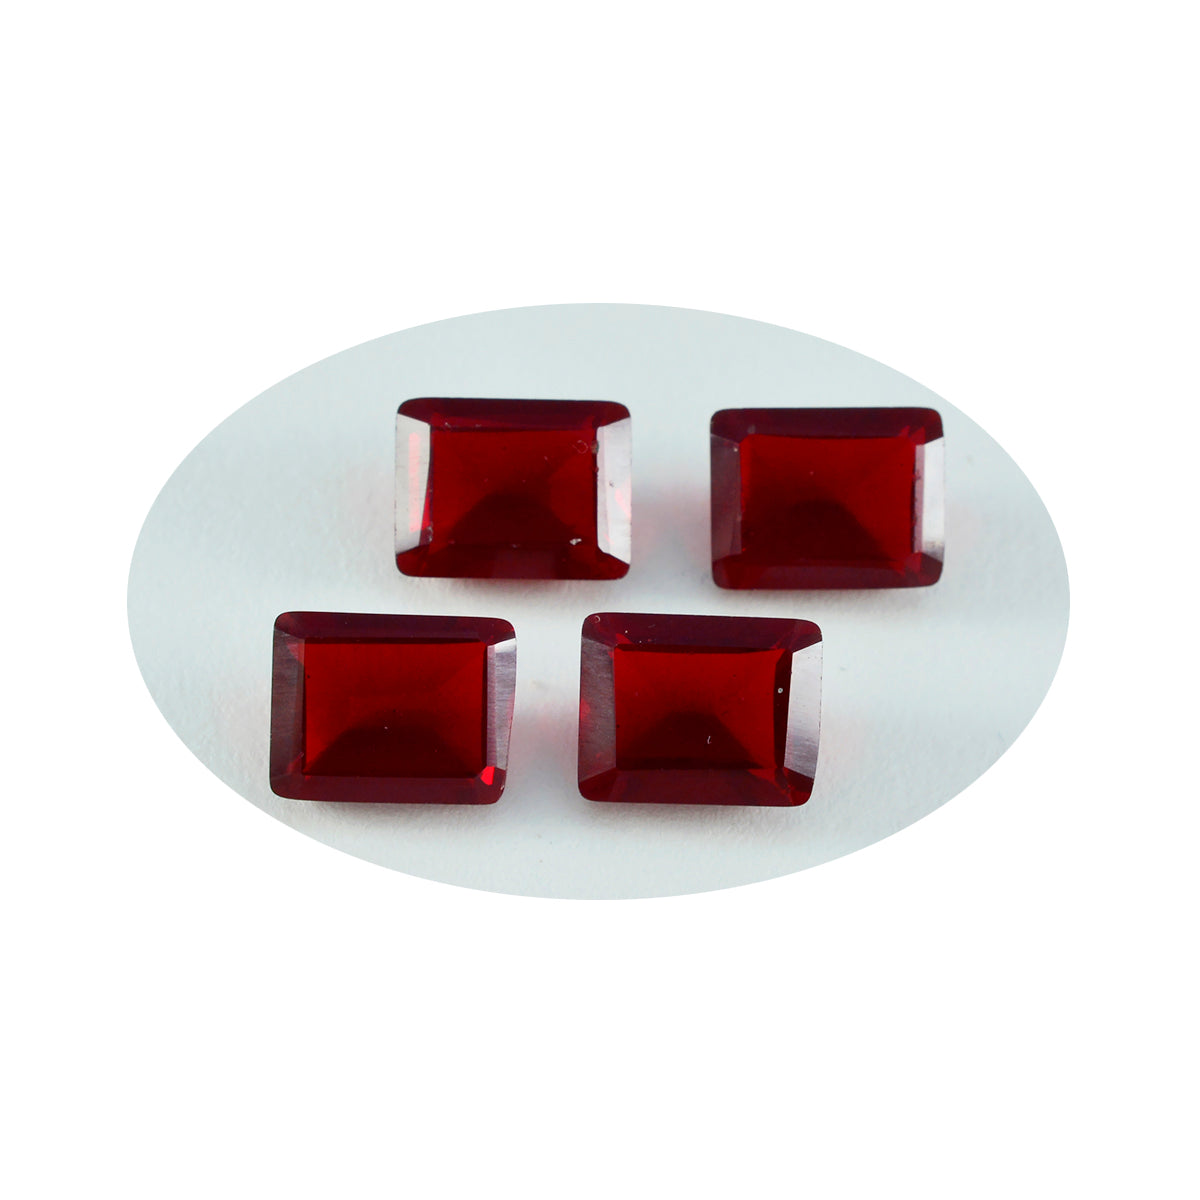 riyogems 1st röd rubin cz fasetterad 10x12 mm oktagonform härlig kvalitet lösa ädelstenar